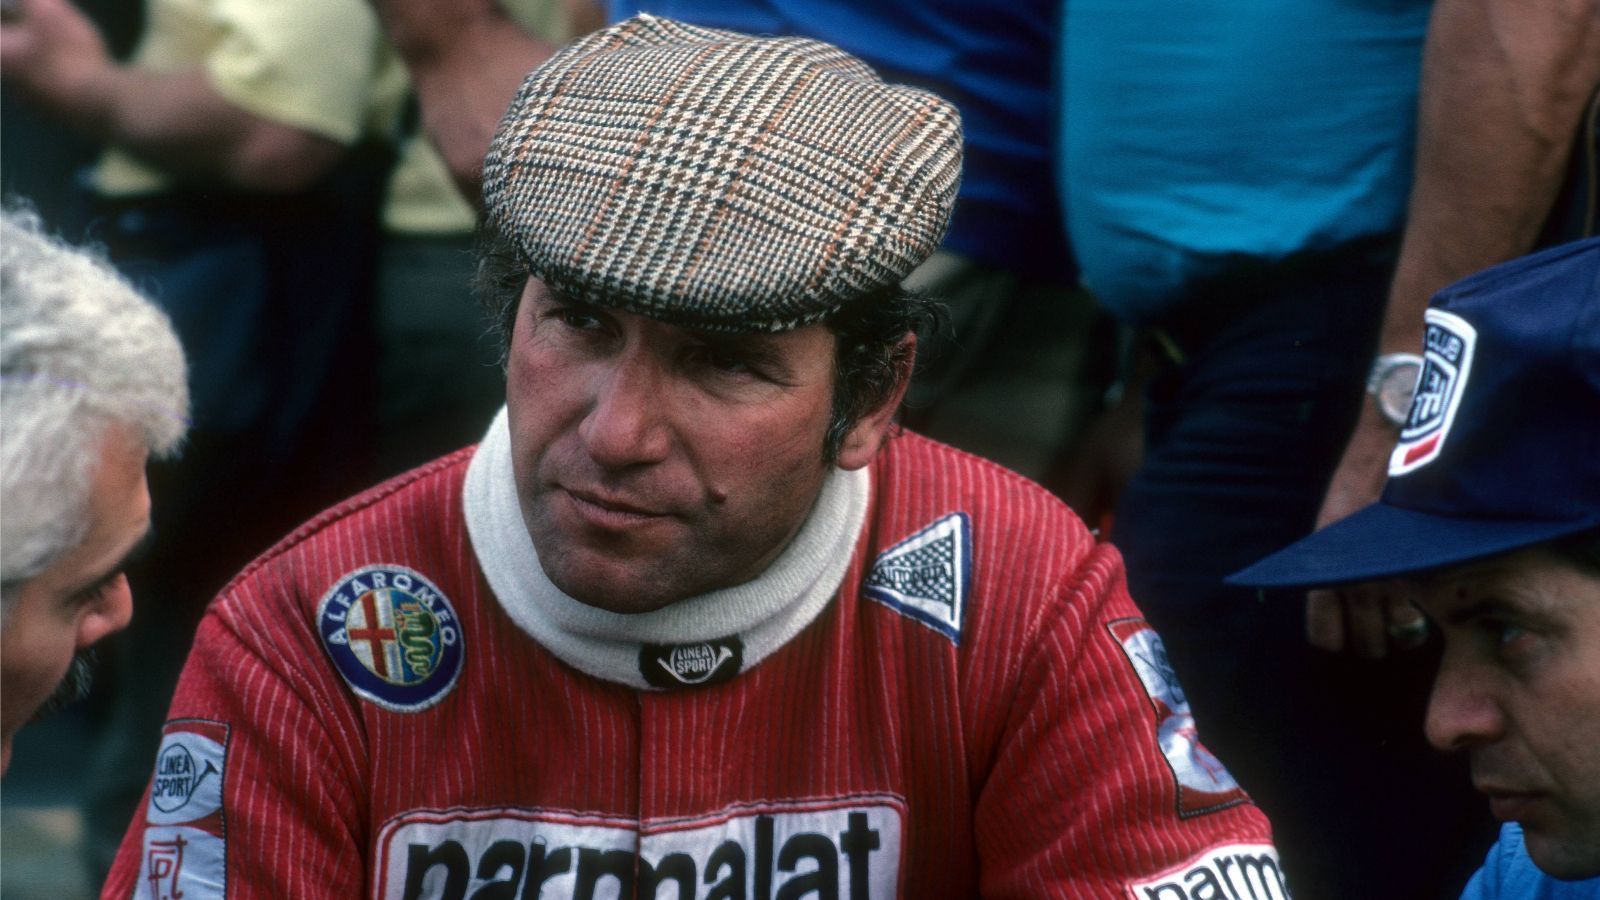 
                <strong>Vitorio Brambilla</strong><br>
                Der Italiener, der als "Vittorio der Schreckliche" bekannt war, produzierte während seiner Zeit in der Formel 1 so manchen Schrotthaufen. Und das selbst im größten Moment seiner Karriere. Auf dem Österreichring 1975 siegte er im Regenchaos und jubelte bei der Überquerung der Ziellinie derart euphorisch mit den Händen, dass er in die Leitplanke knallte.
              